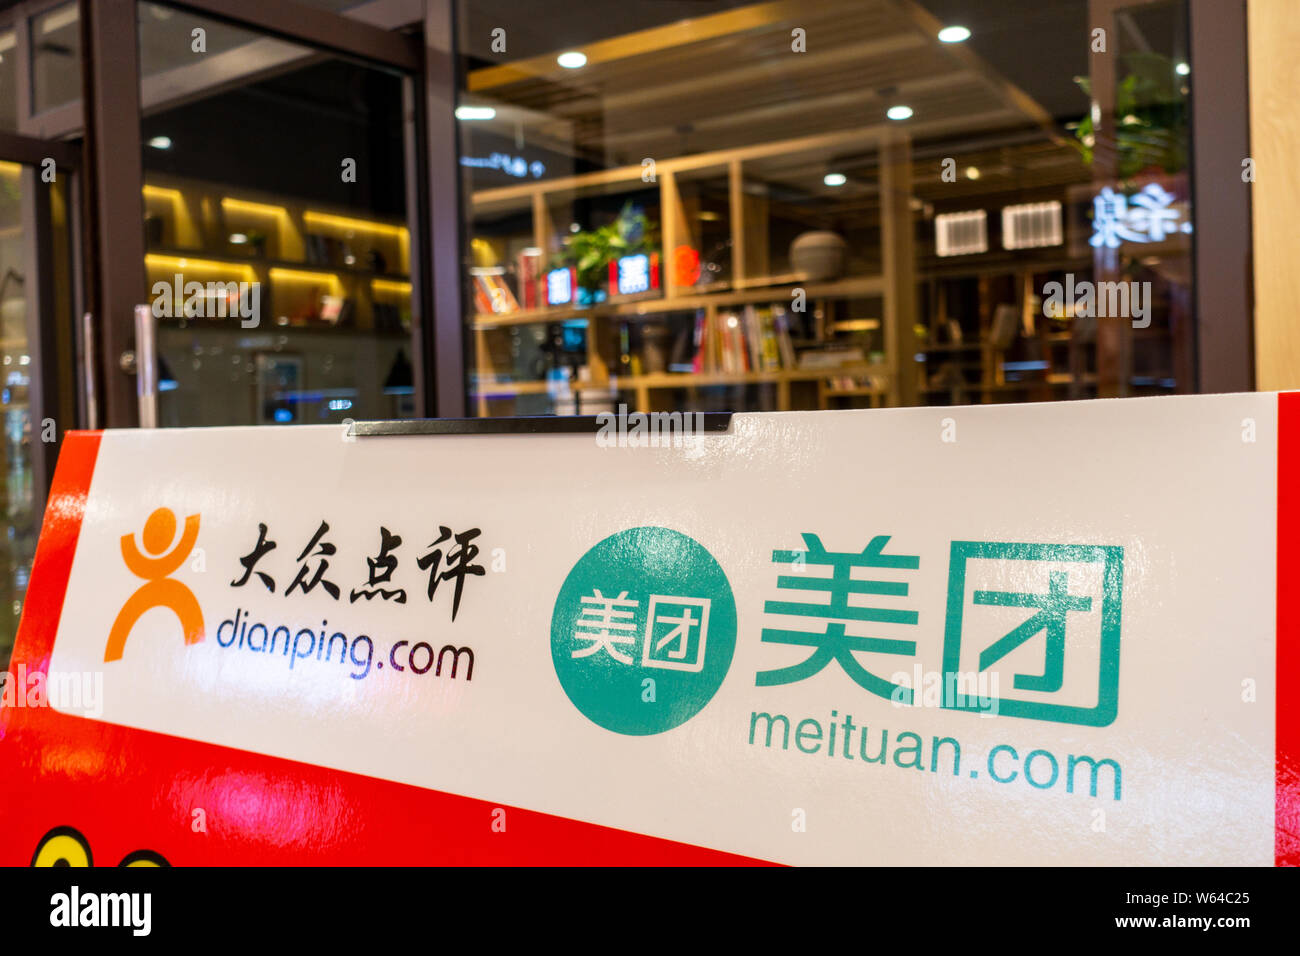 Une publicité en ligne pour l'achat de groupe et de l'alimentation commande de services Meituan, droite, et restaurant rating service Dianping est photographié à Shanghai, Ch Banque D'Images